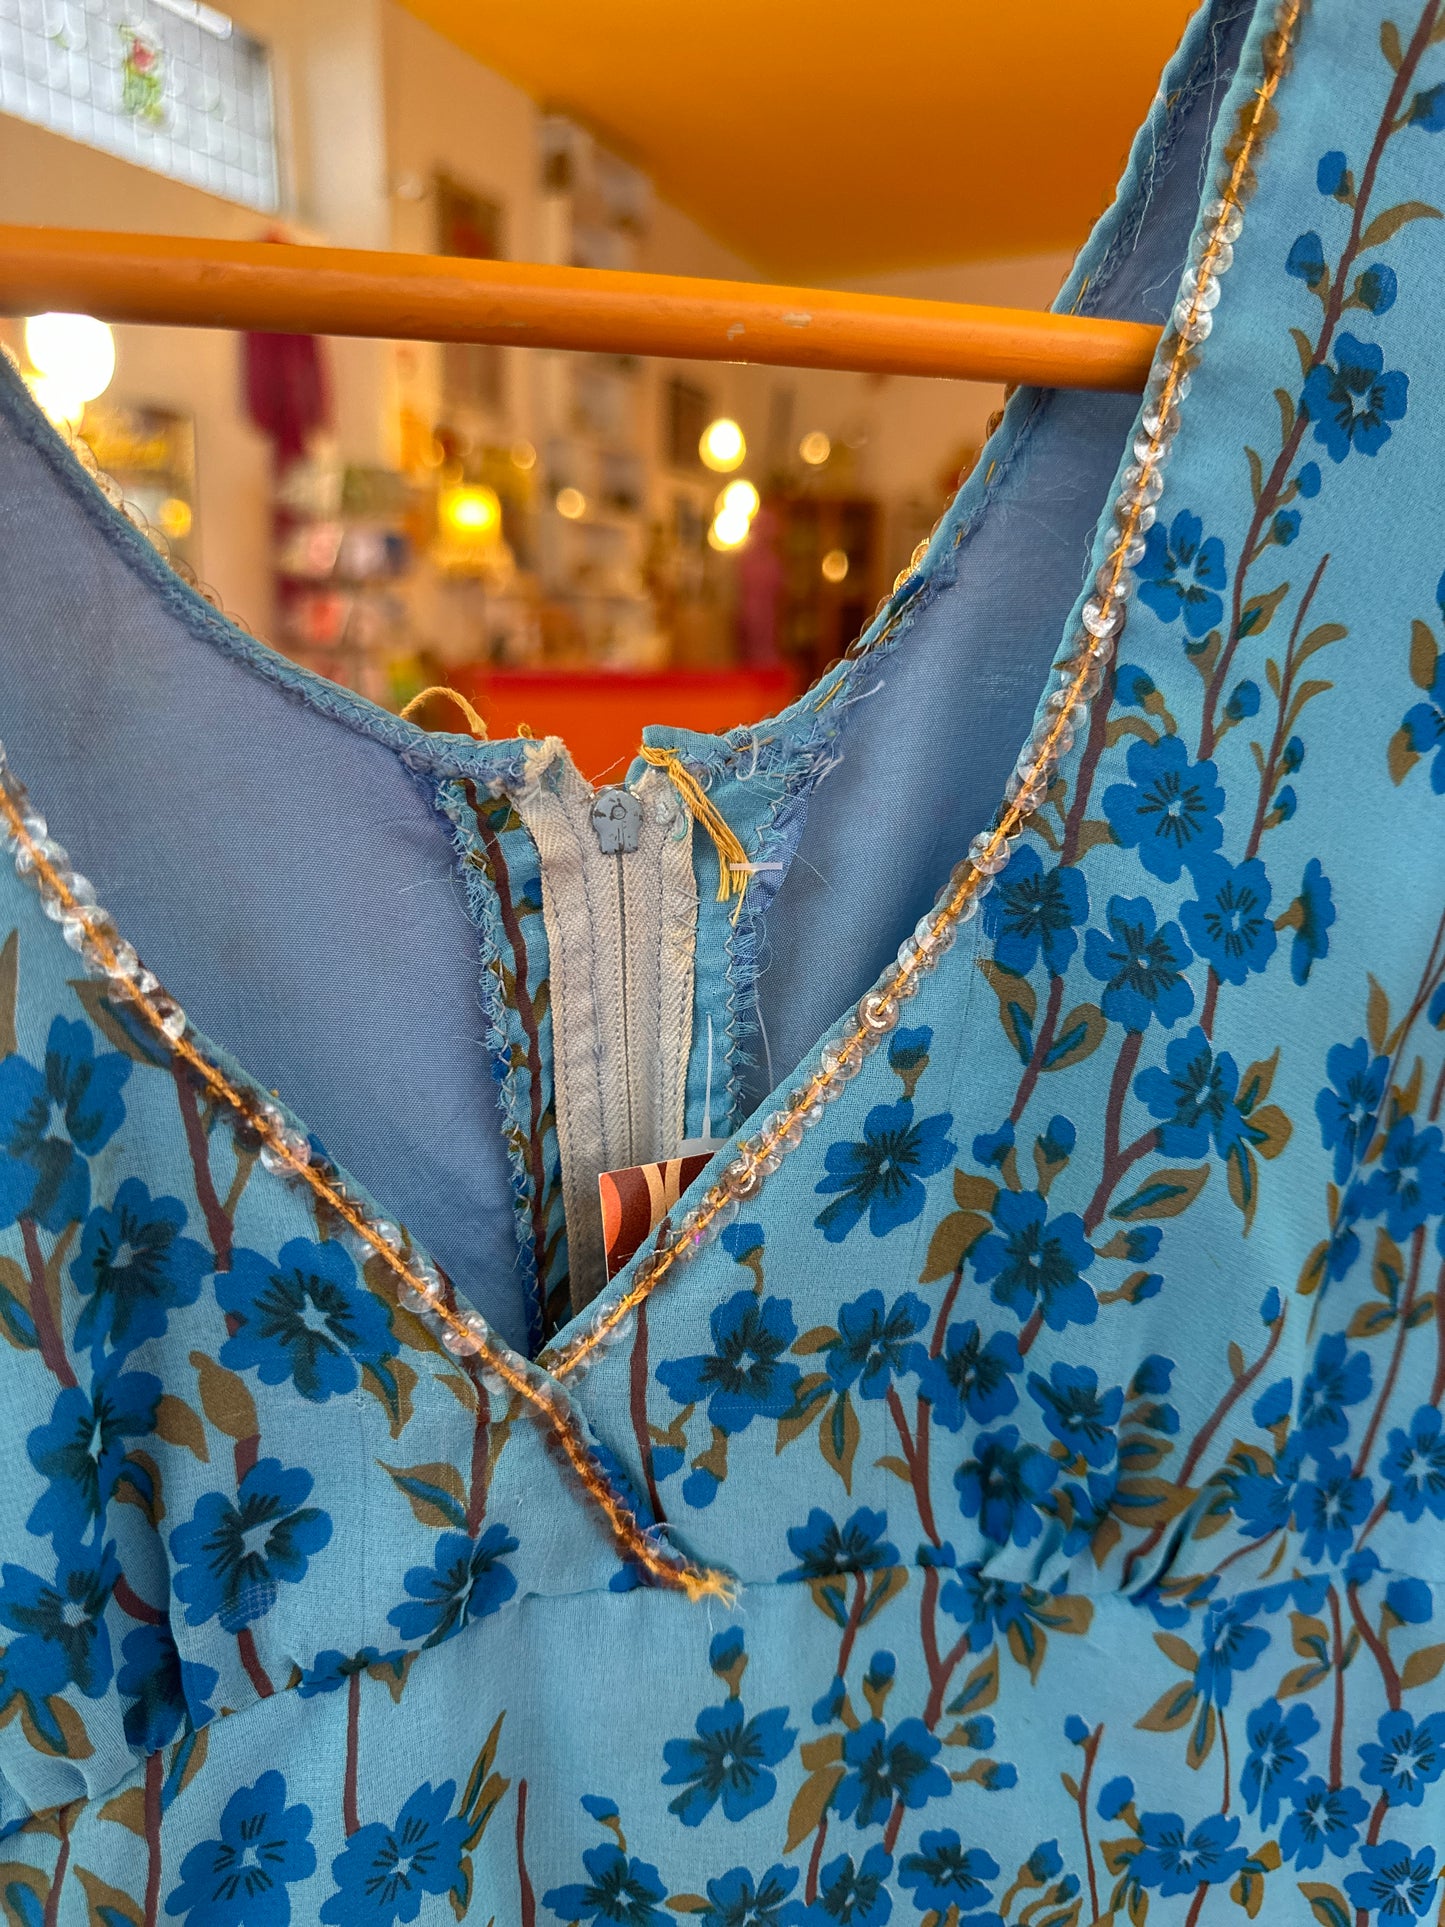 Vintage Blue Floral Dress